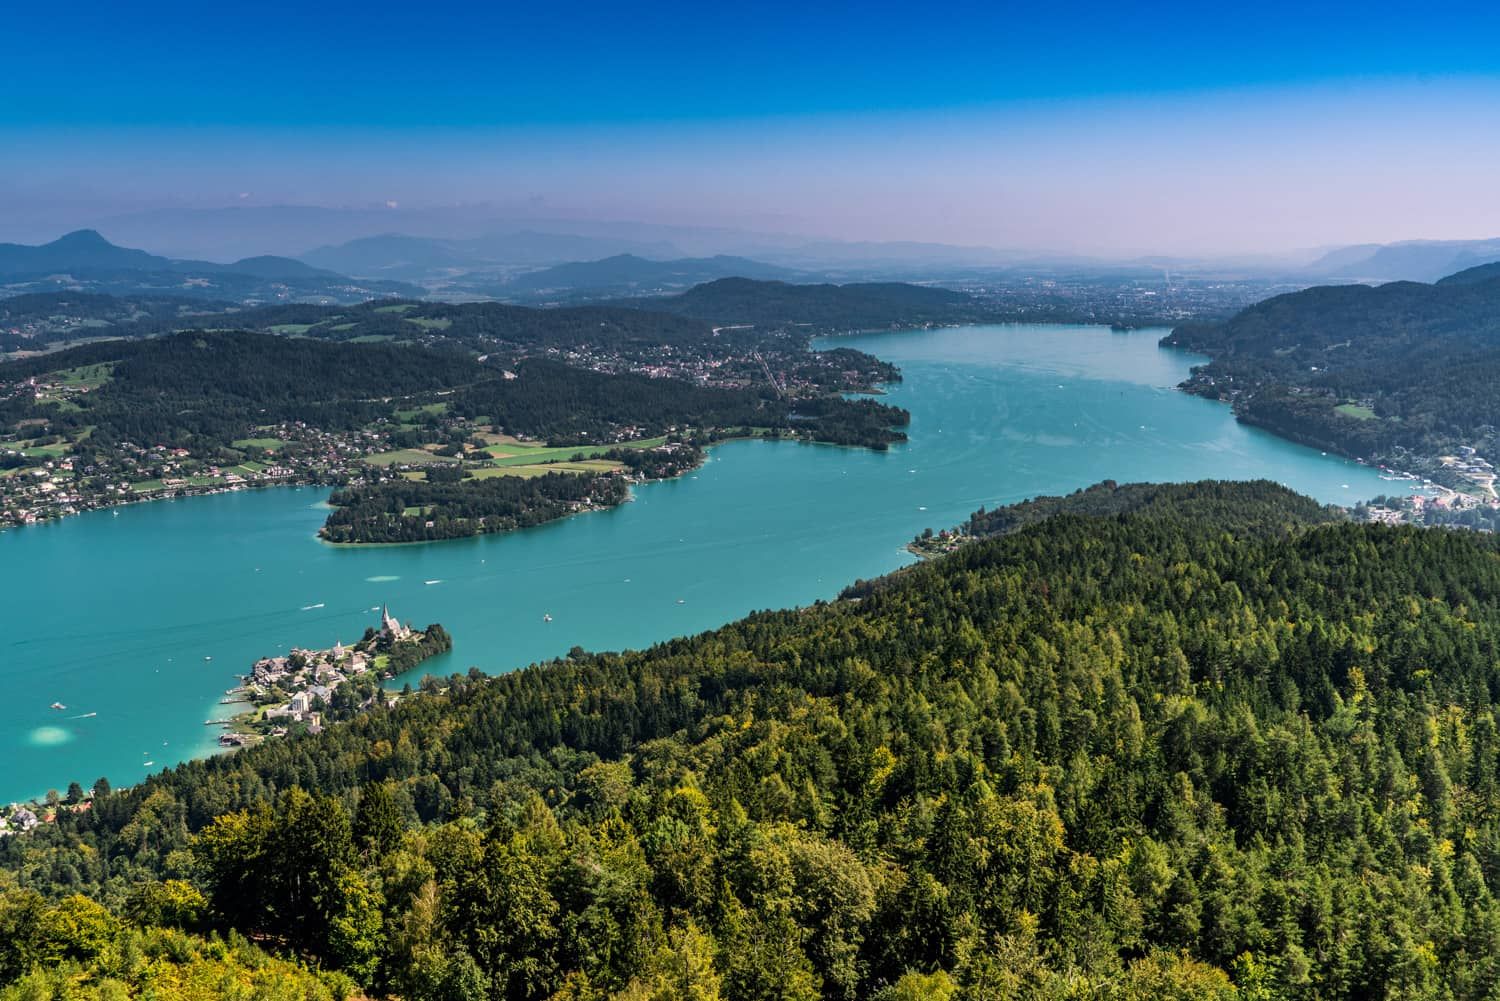 Luftbild des Wörthersees - Riesiger See umzingelt mit Wäldern